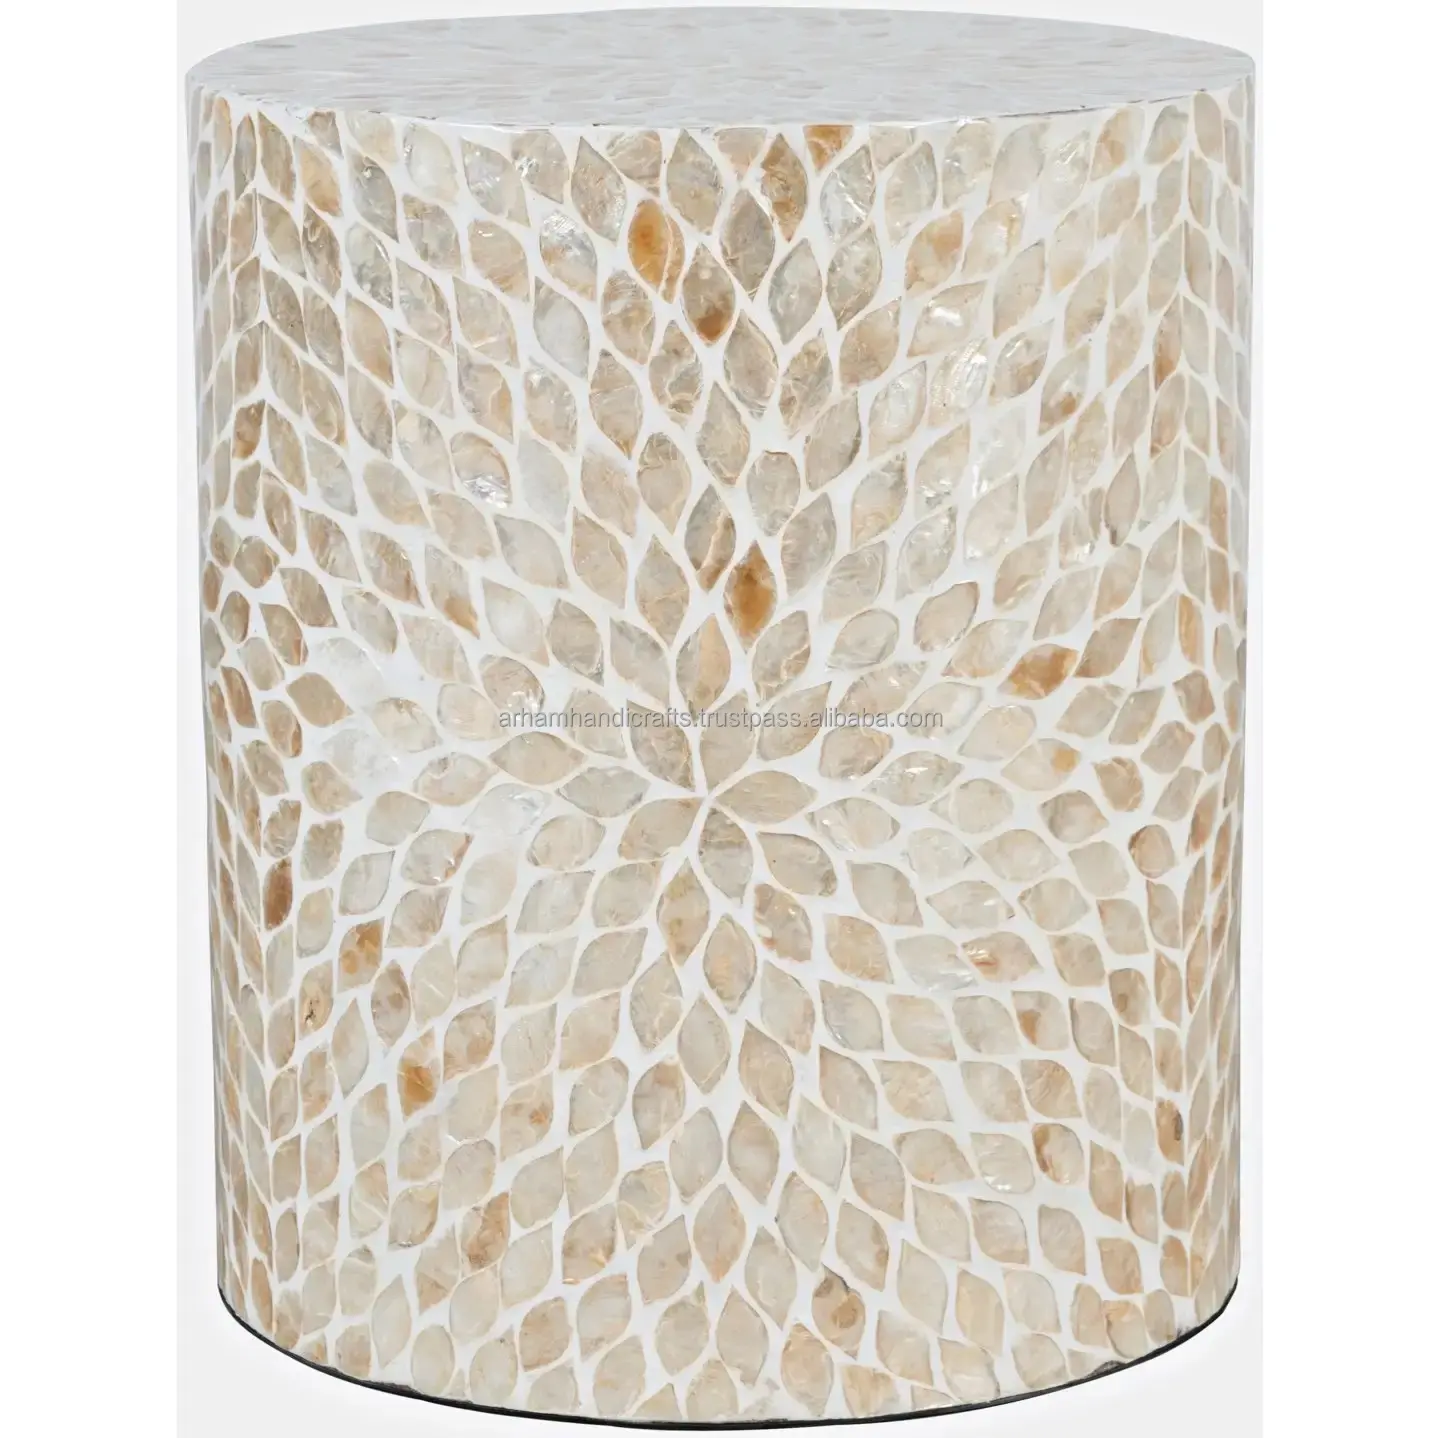 Marokkanischer Stil runder Knochen-Einlage Couchtisch Metallbasis hochwertige Tischplatte Wohnzimmermöbel von LUXURY CRAFTS